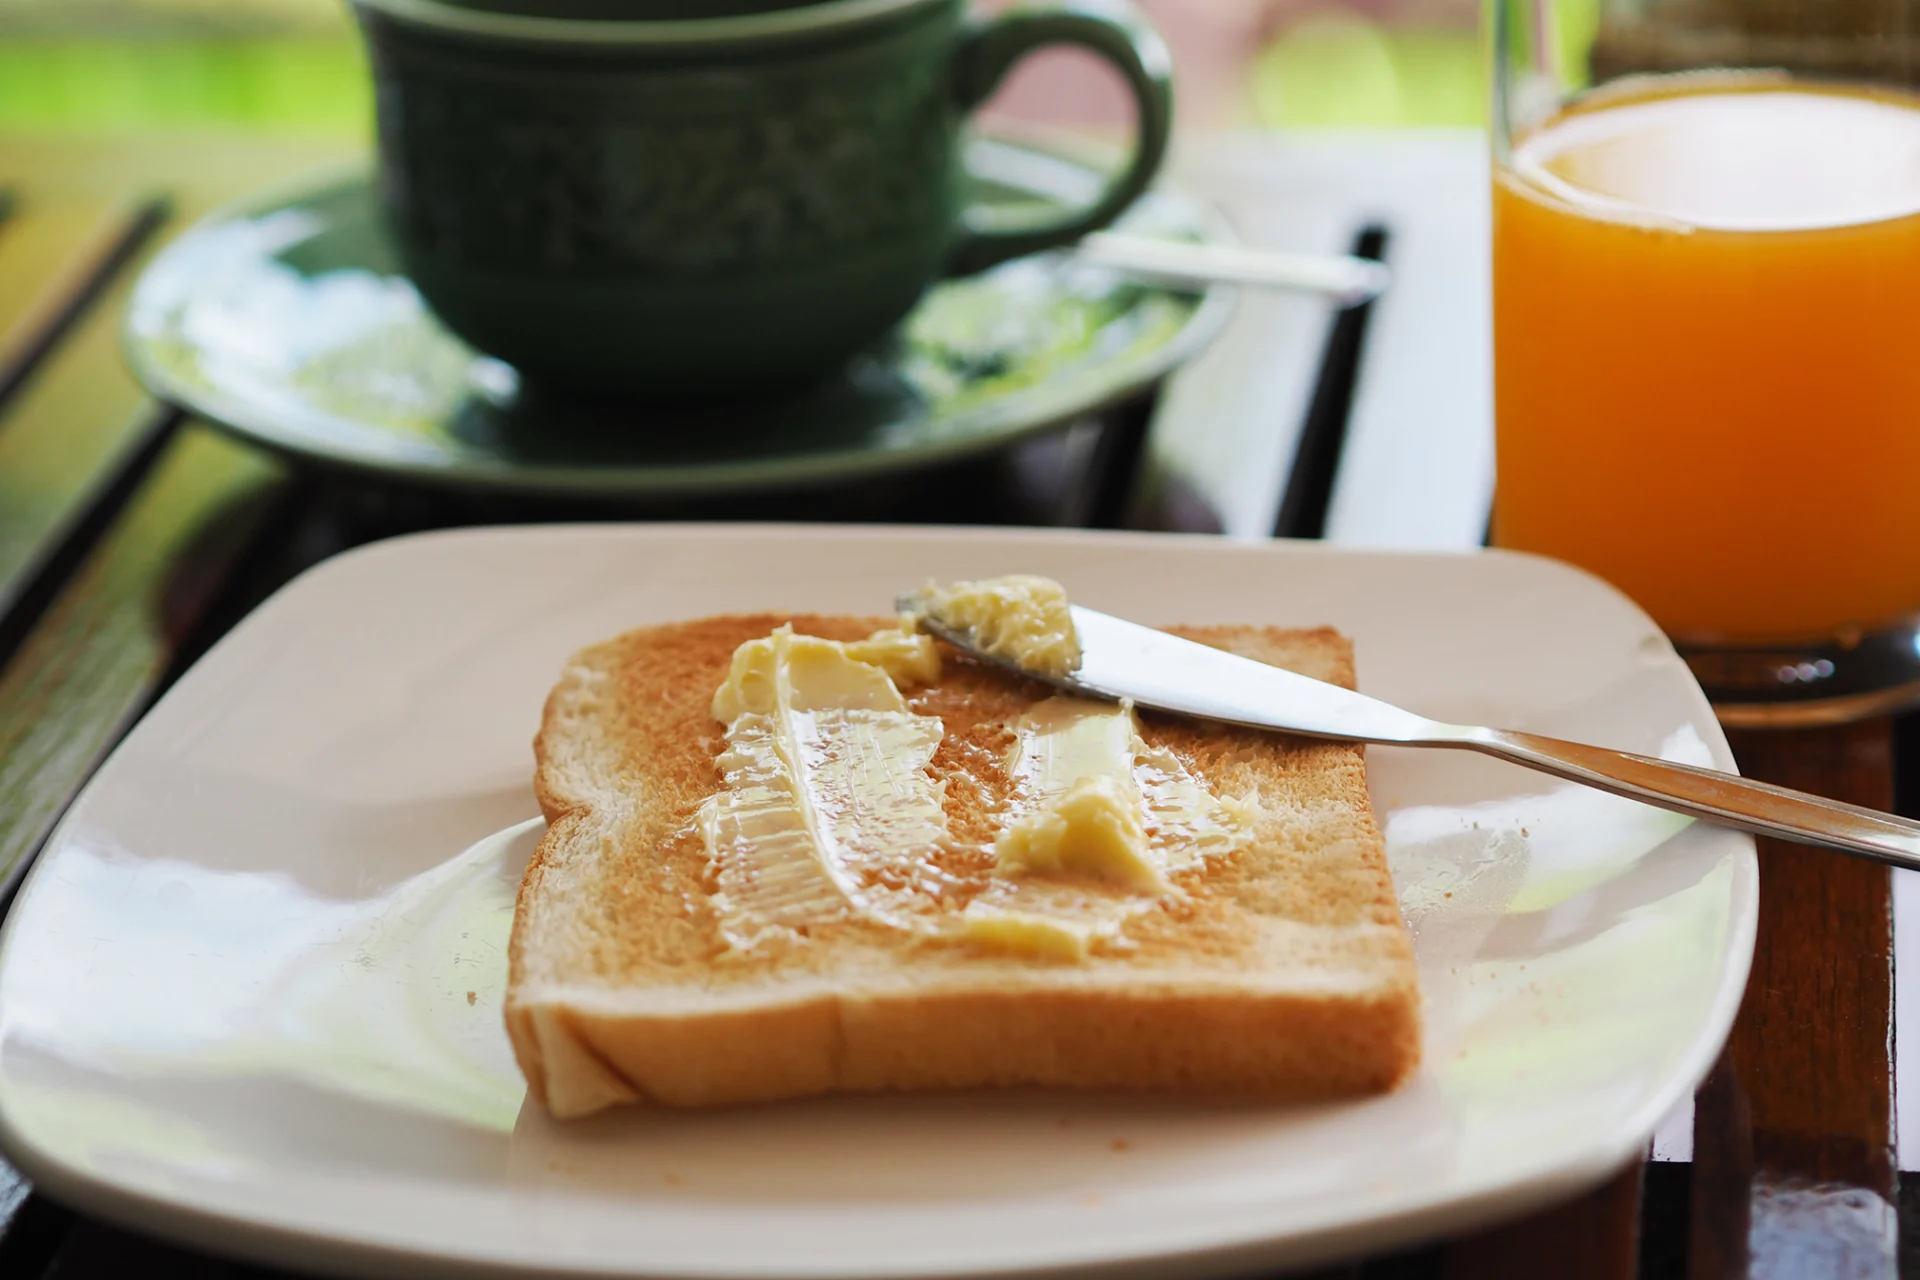 Una fetta di pane da toast con del burro spalmato sopra su un piatto. Dietro c'è una tazza con una bevanda calda e del succo d'arancia.